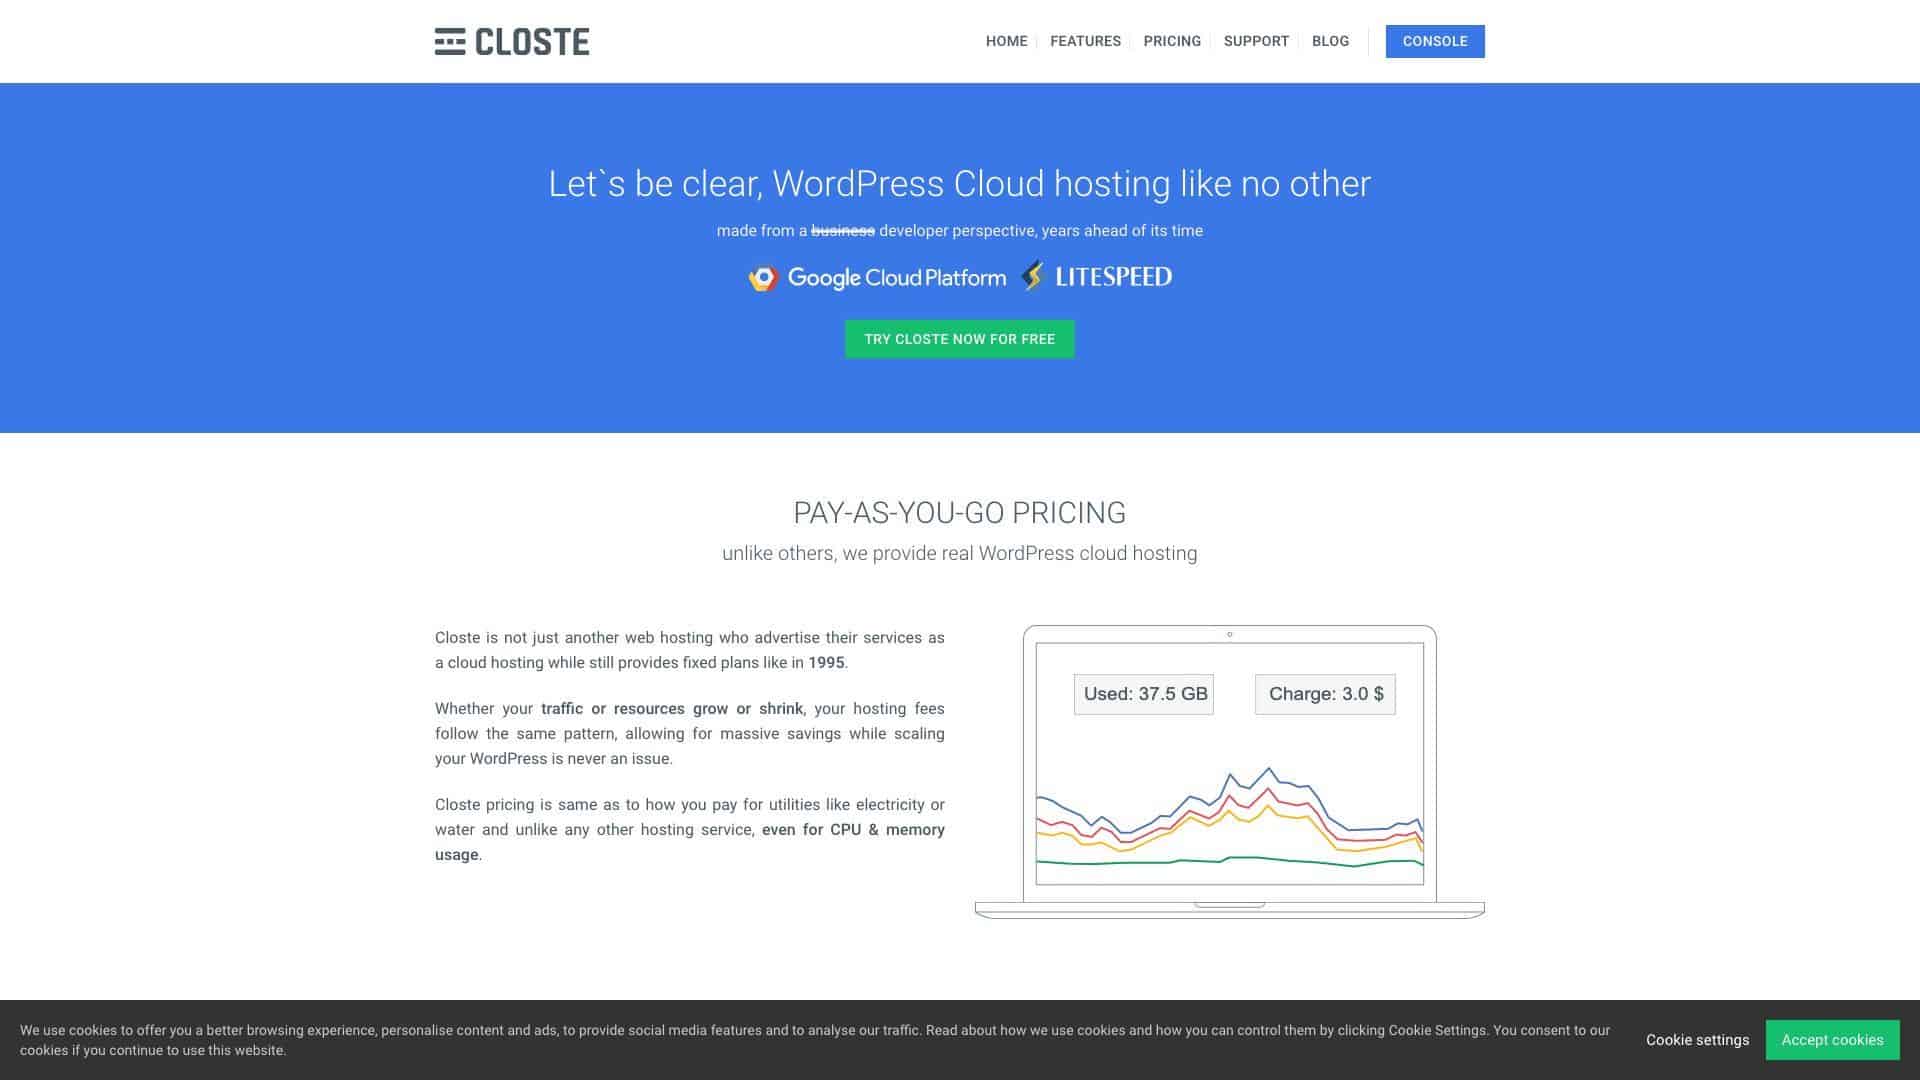 Clostle.com